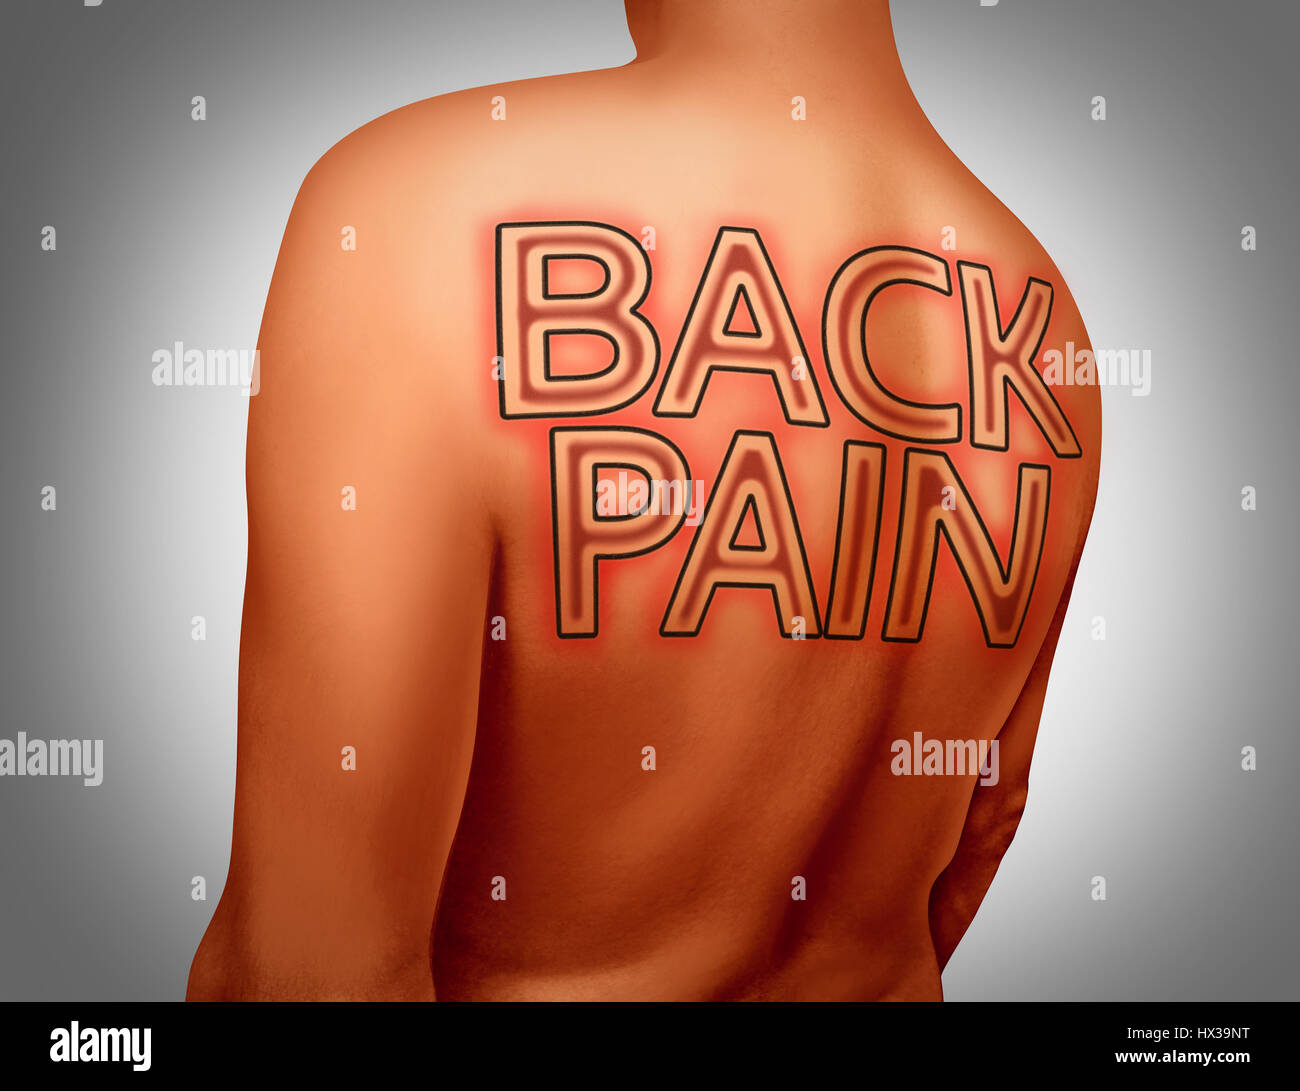 Dolore alla schiena concetto medico come testo arte del tatuaggio su pelle umana come una salute muscolari scheletriche o dolore o lesioni dorso con 3D'illustrazione degli elementi. Foto Stock